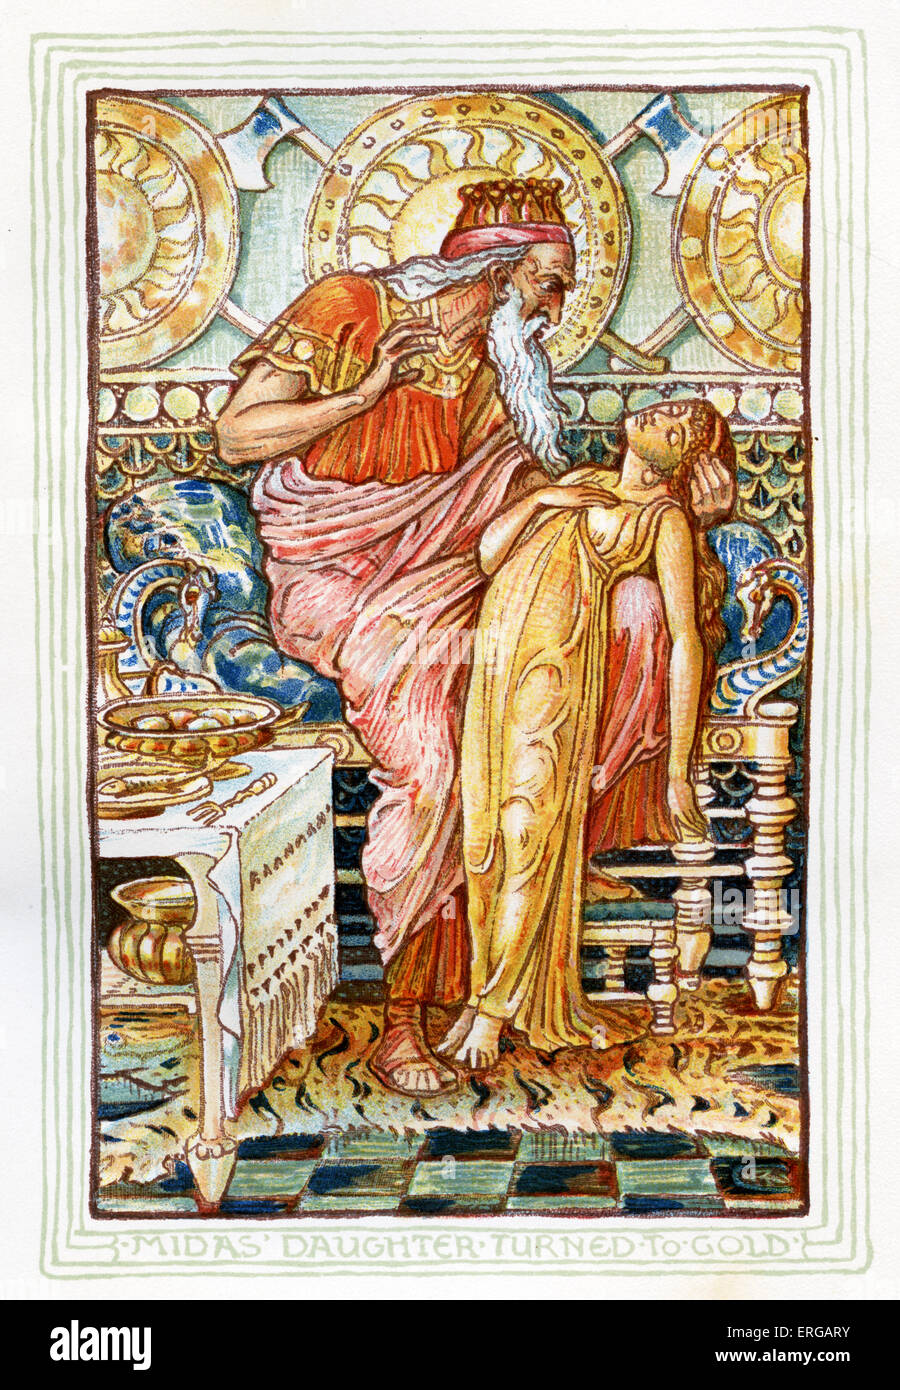 La fille de Midas, Marygold tourné vers l'or. Racontant des mythes grecs par Nathaniel Hawthorne (1804 - 1864). Illustrations de Walter Crane 1845 -1915 Banque D'Images